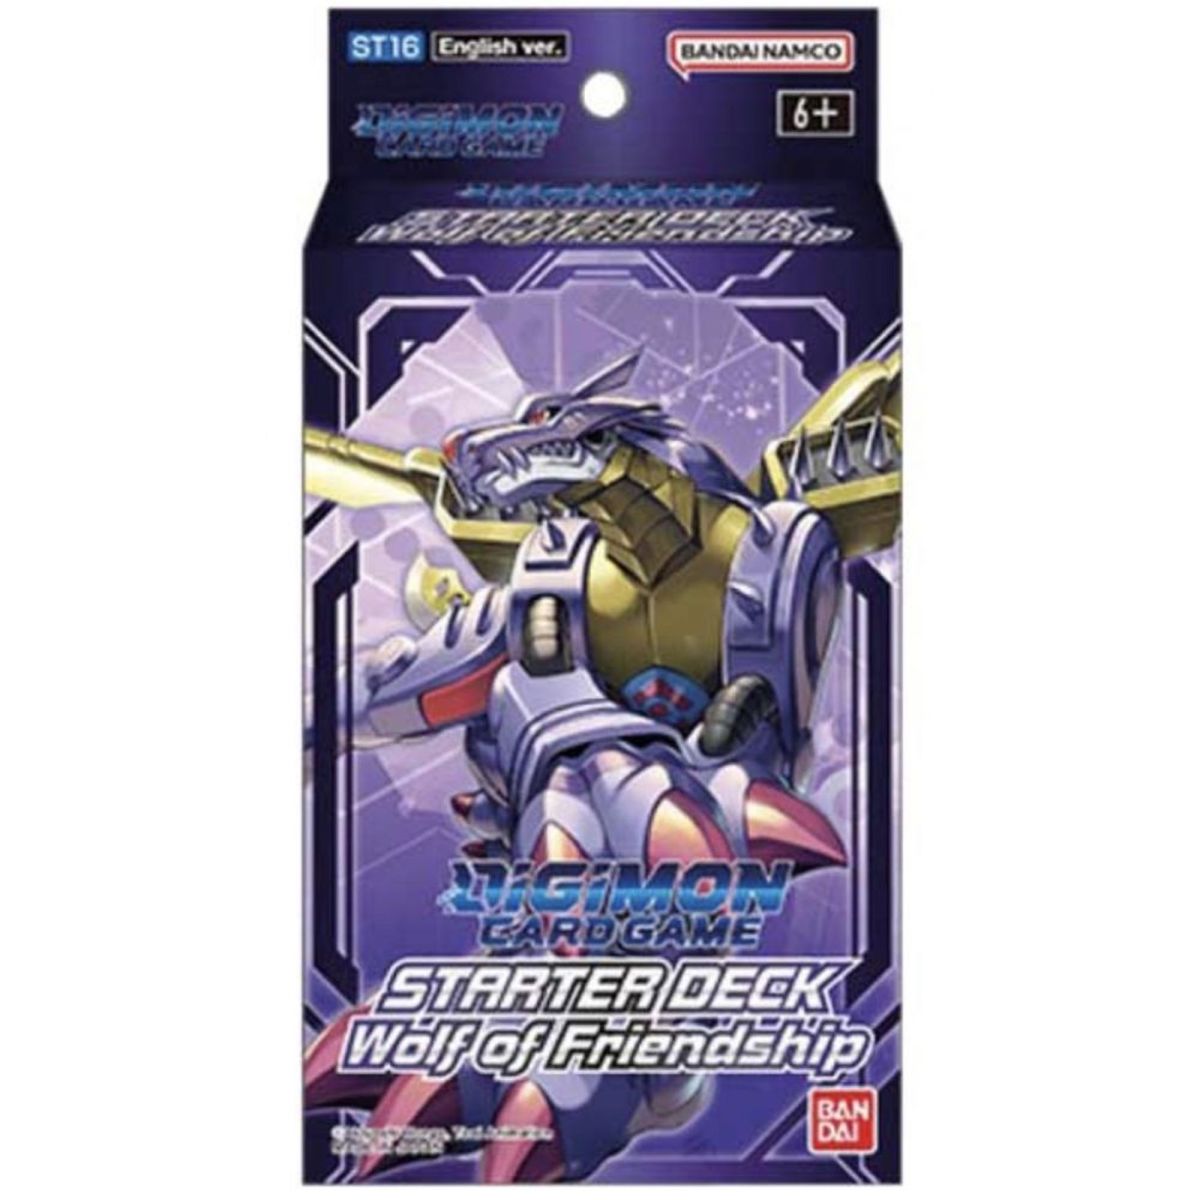 Digimon-Kartenspiel – Starterdeck – ST16 Wolf of Friendship – DE